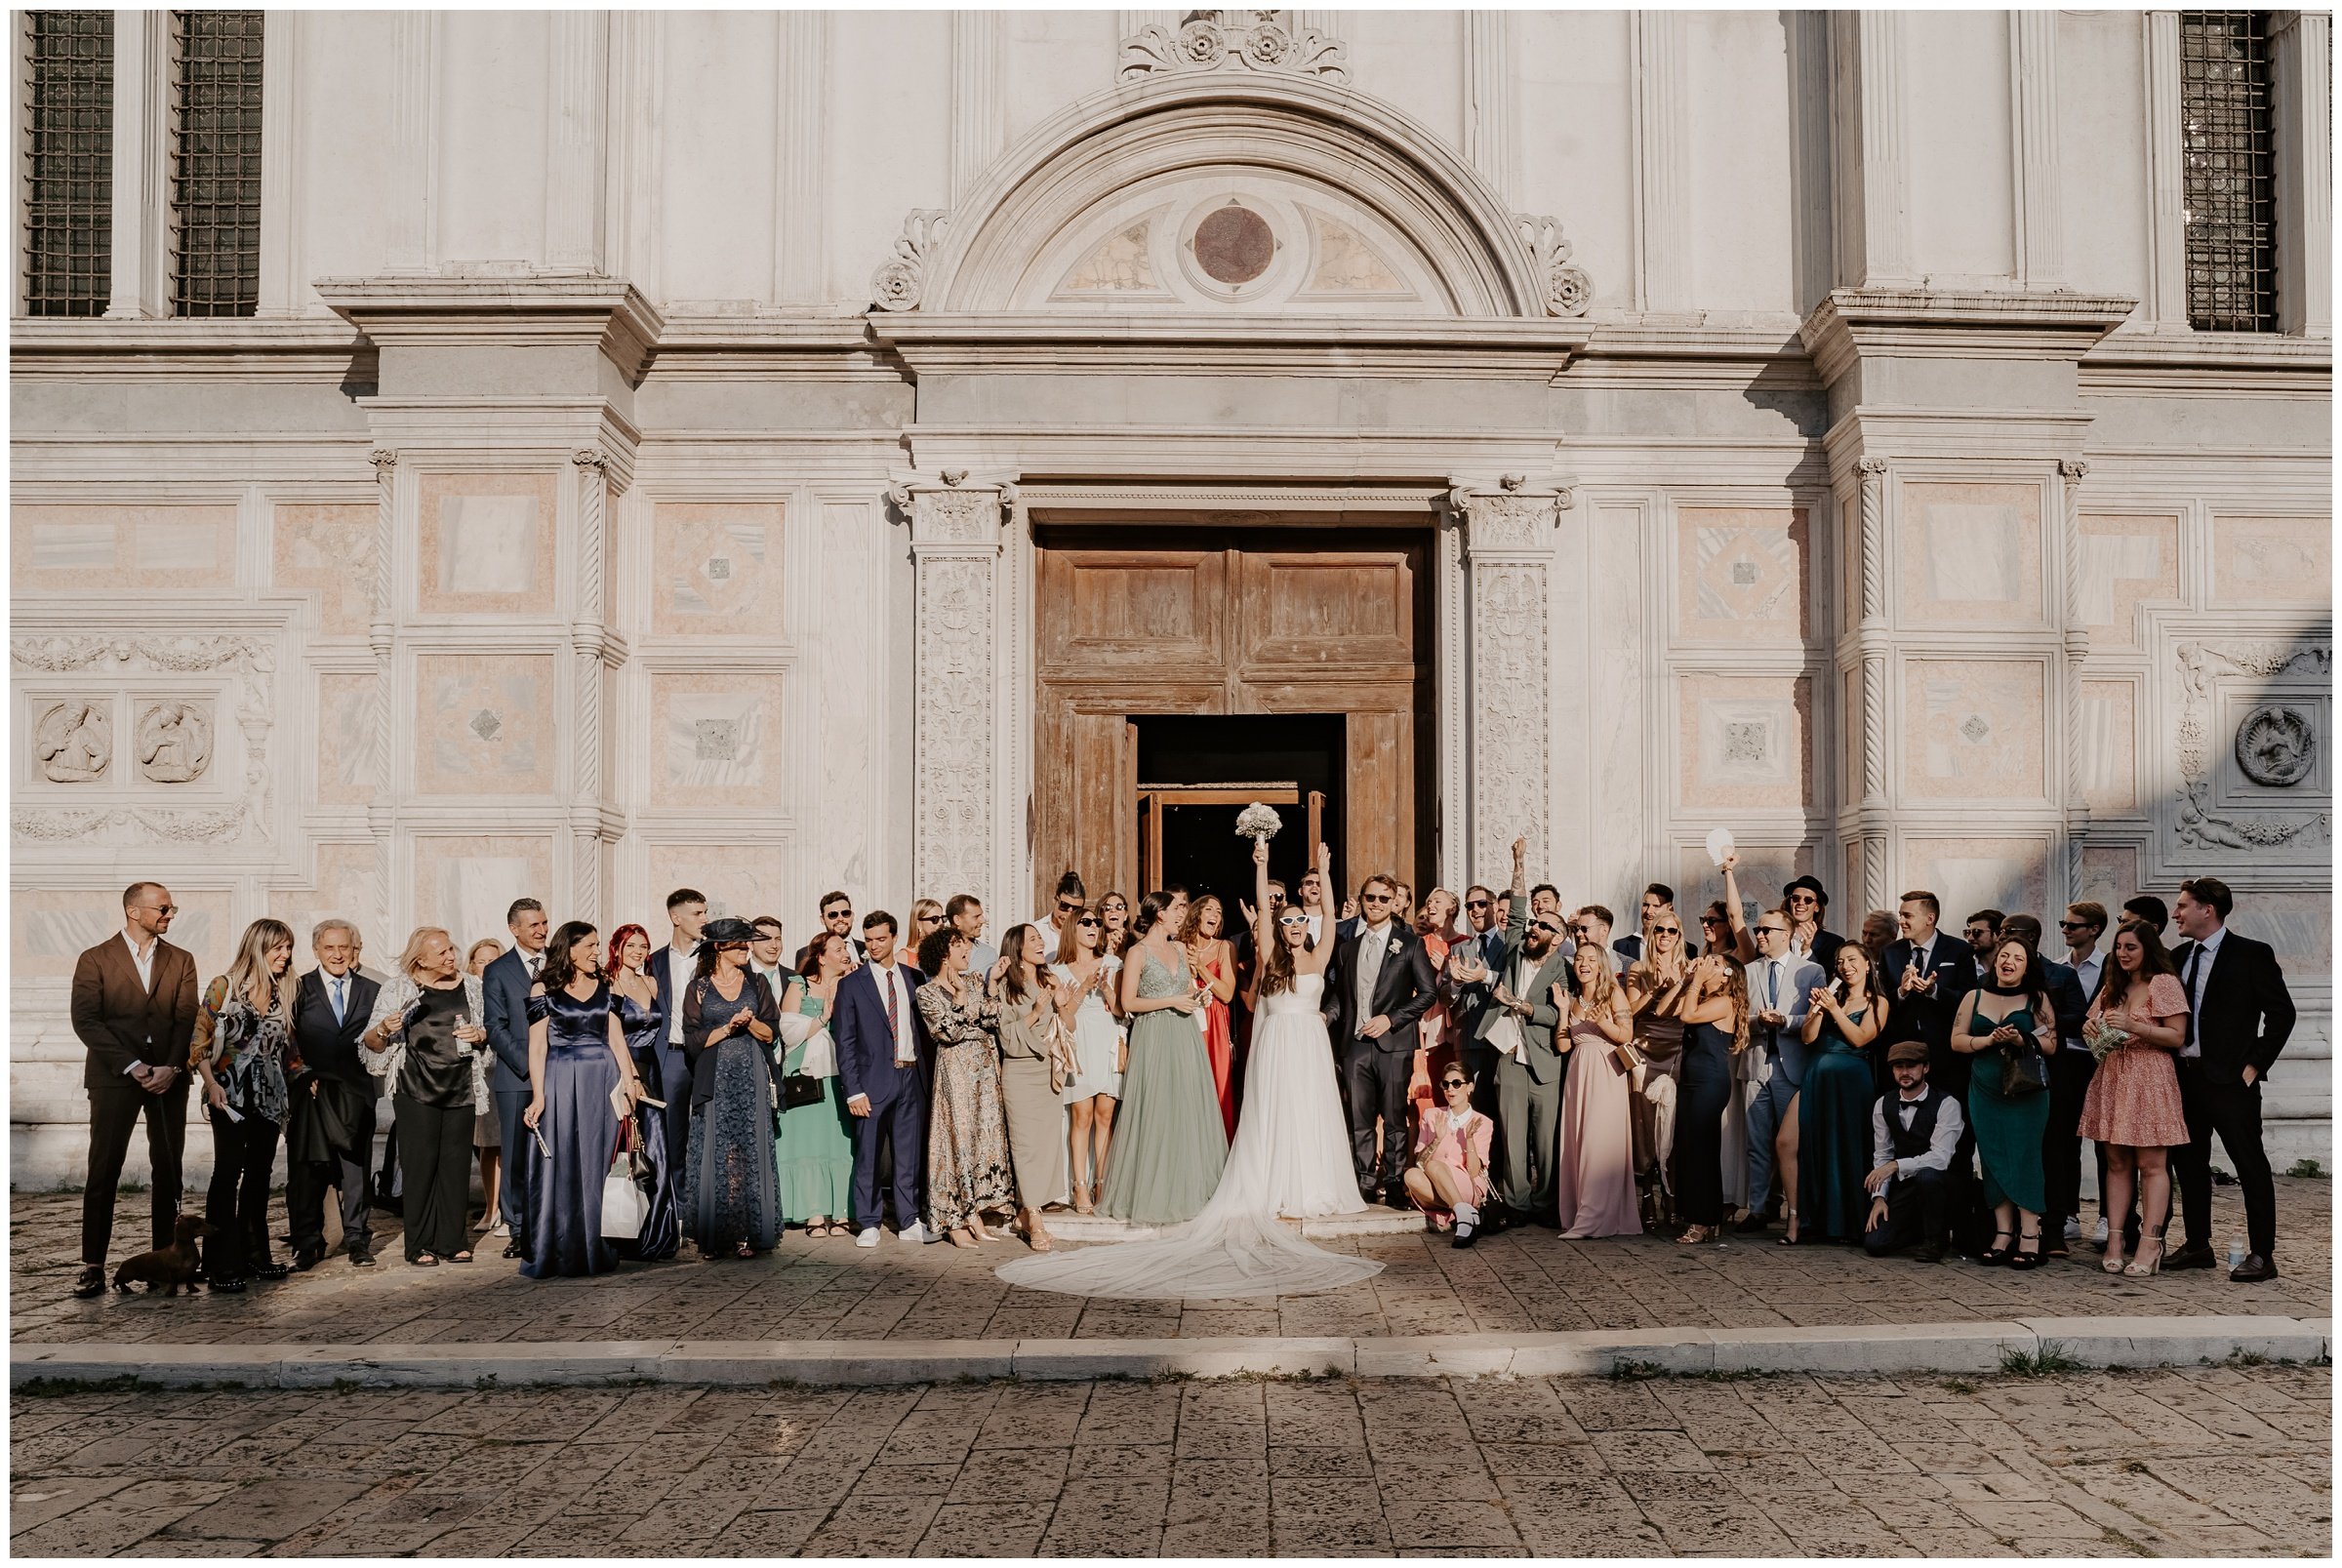 Matrimonio-san-servolo-fotografo-matrimonio-treviso-fotografo-matrimonio-venezia_0117.jpg